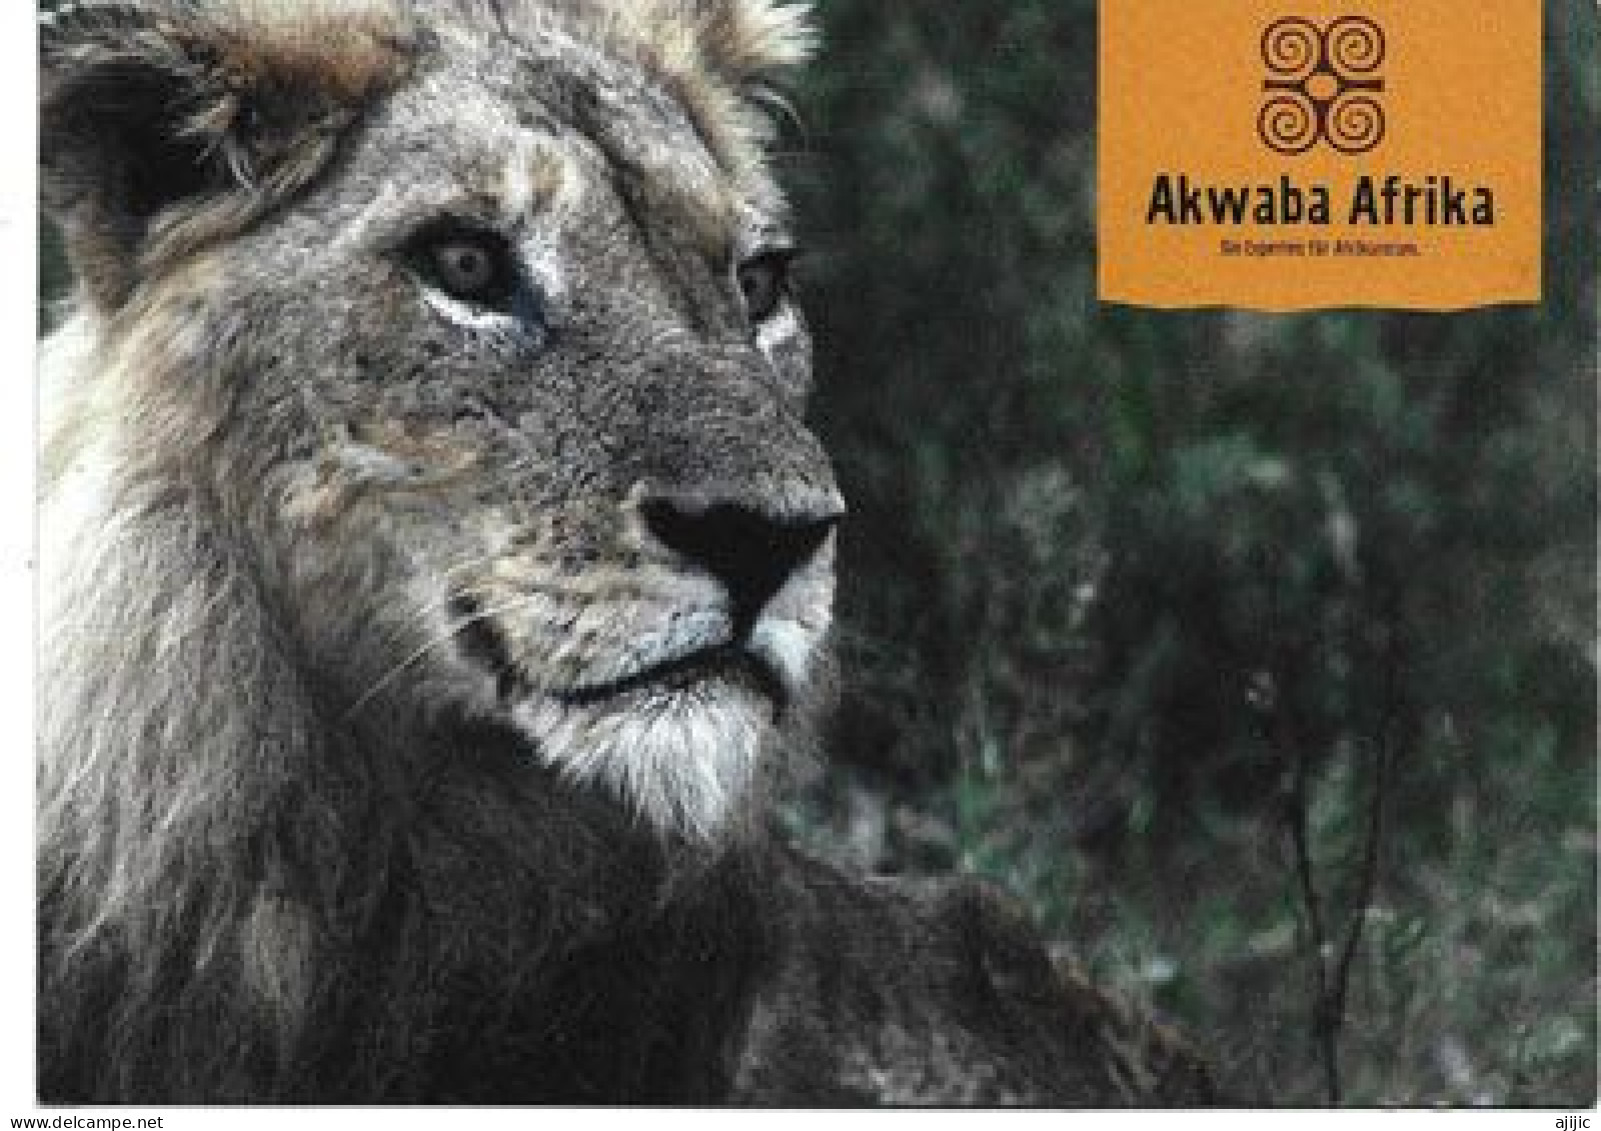 AKWABA AFRIKA  (LION)   Postcard.   New-unused - Lions